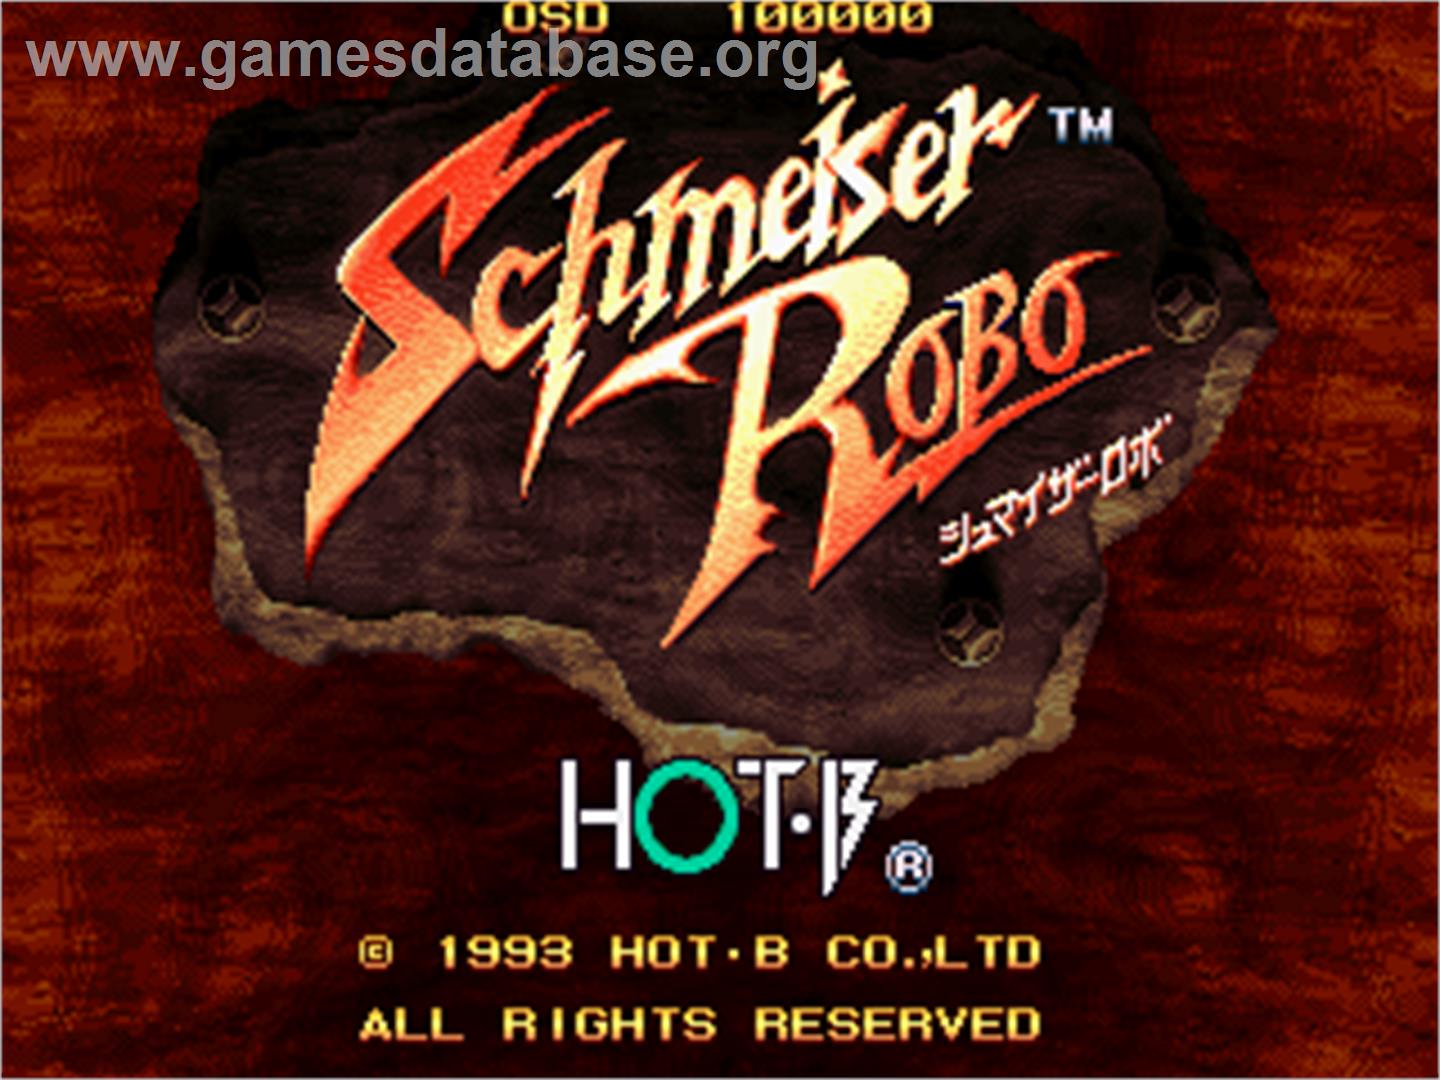 Schmeiser Robo - Arcade - Artwork - Title Screen